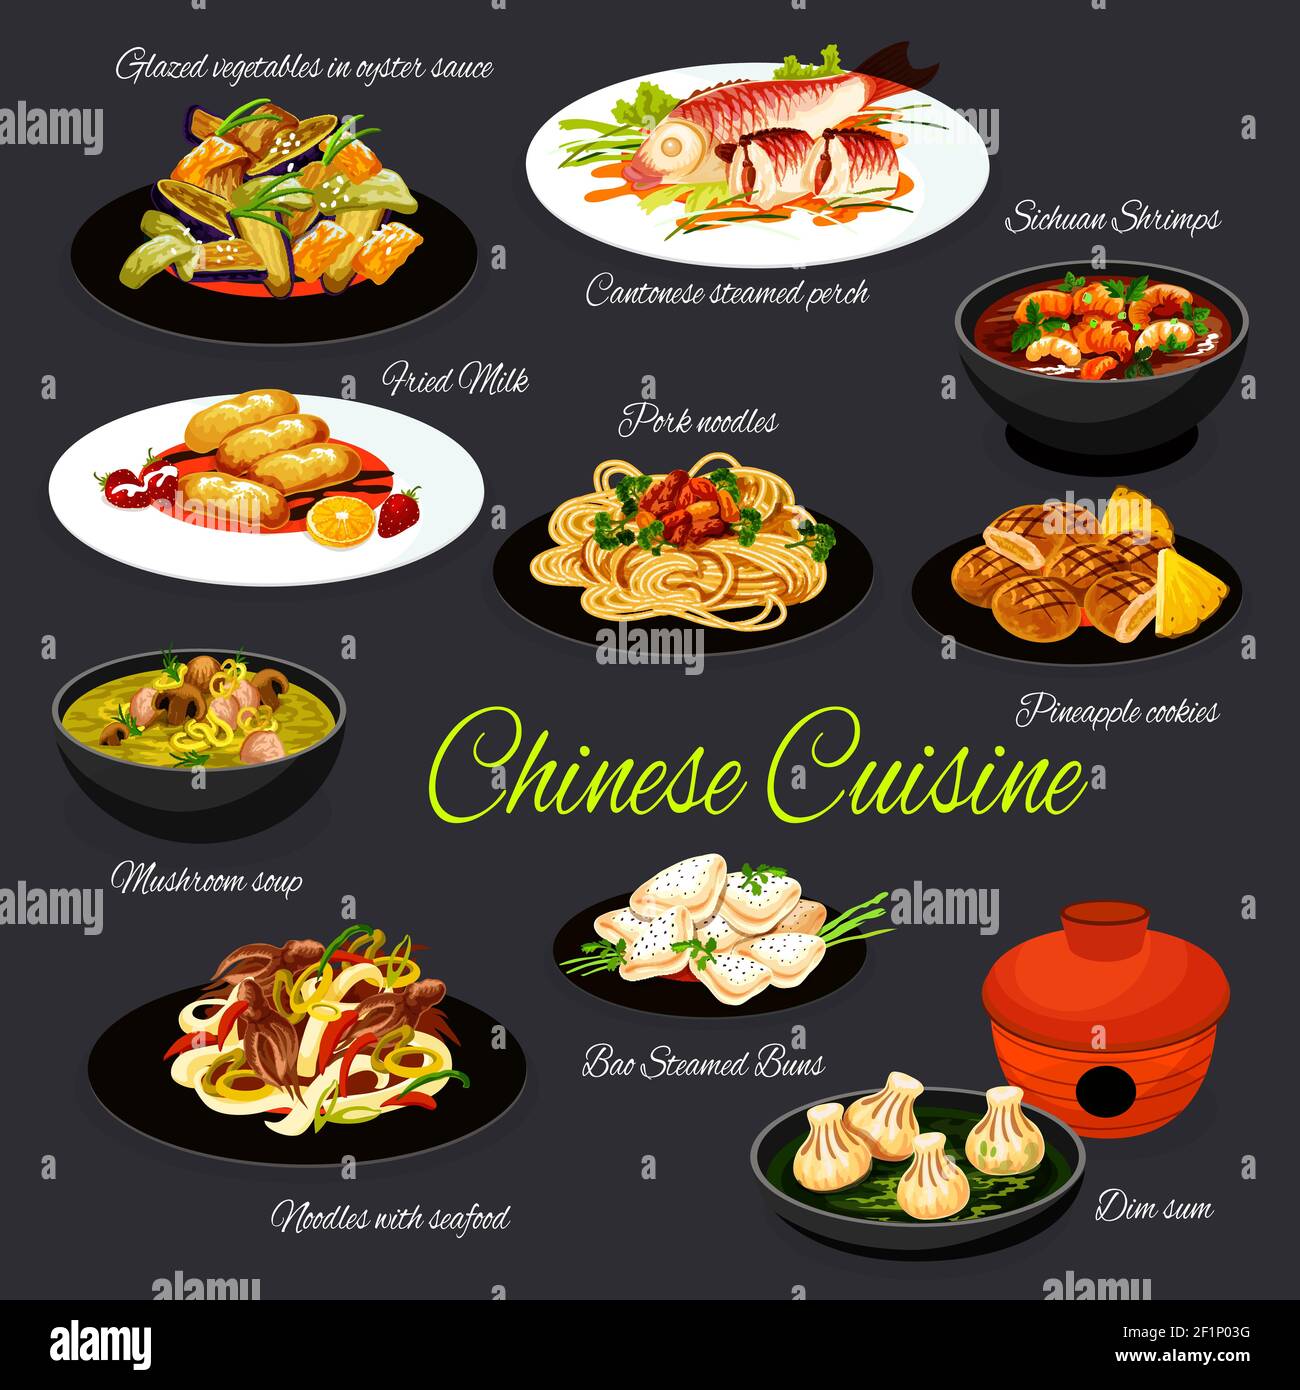 Cantonese Food Menu